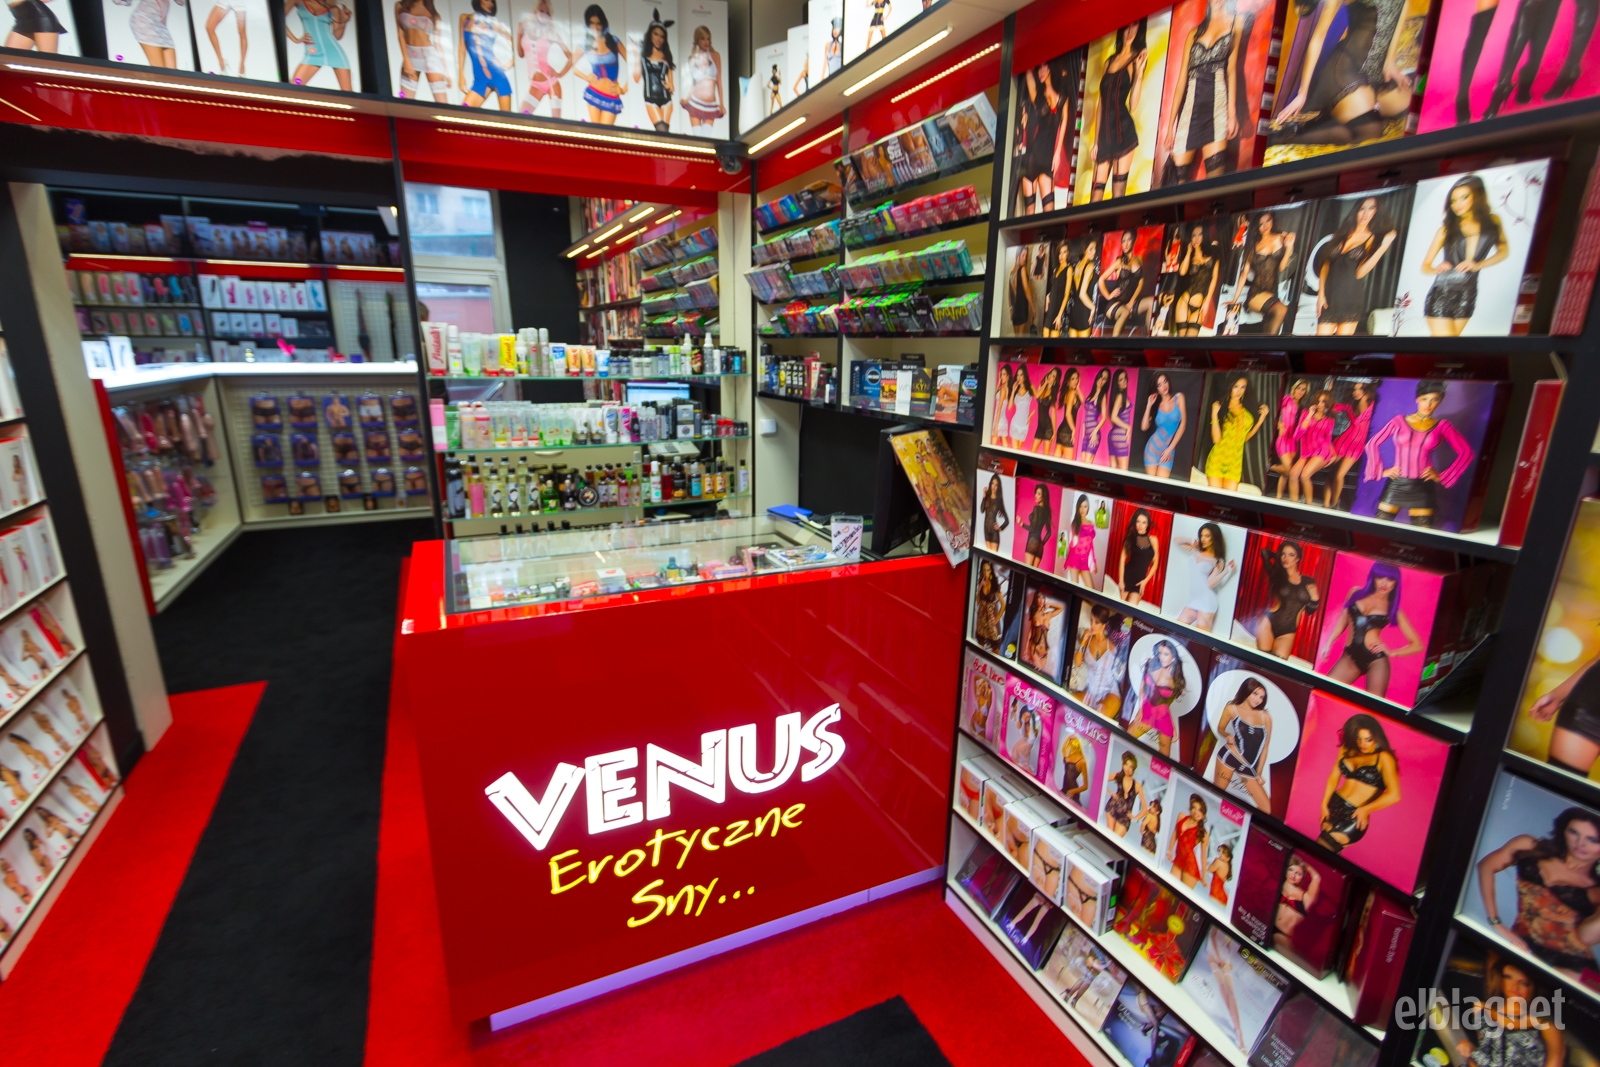 Sex shop Venus.